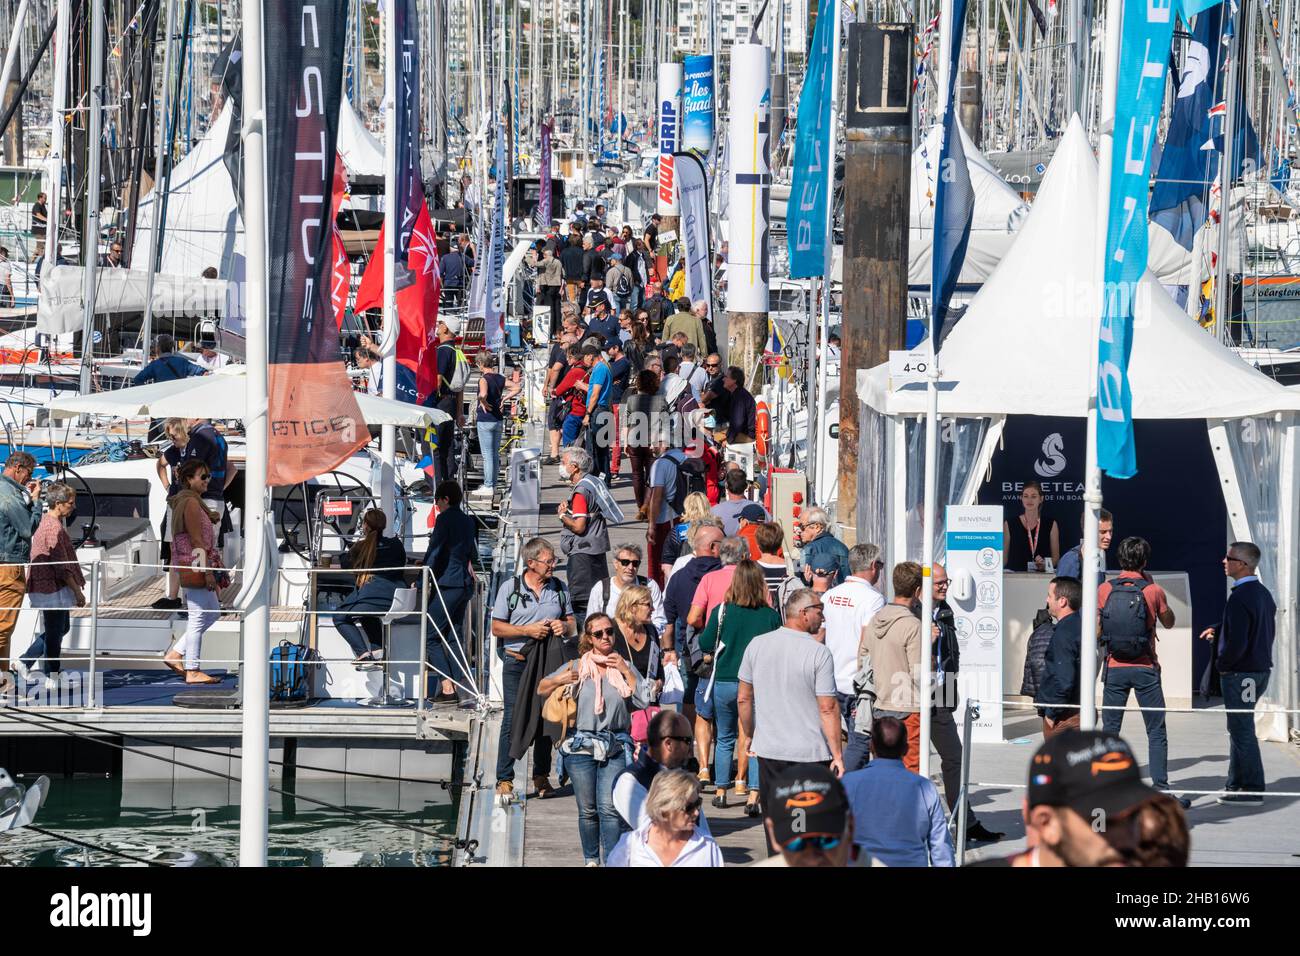 La Rochelle (centre-est de la France), 29 septembre 2021 : Grand Pavois la Rochelle Boat Show 2021.Visiteurs et exhibiateurs sur pontons avec le voilier Banque D'Images